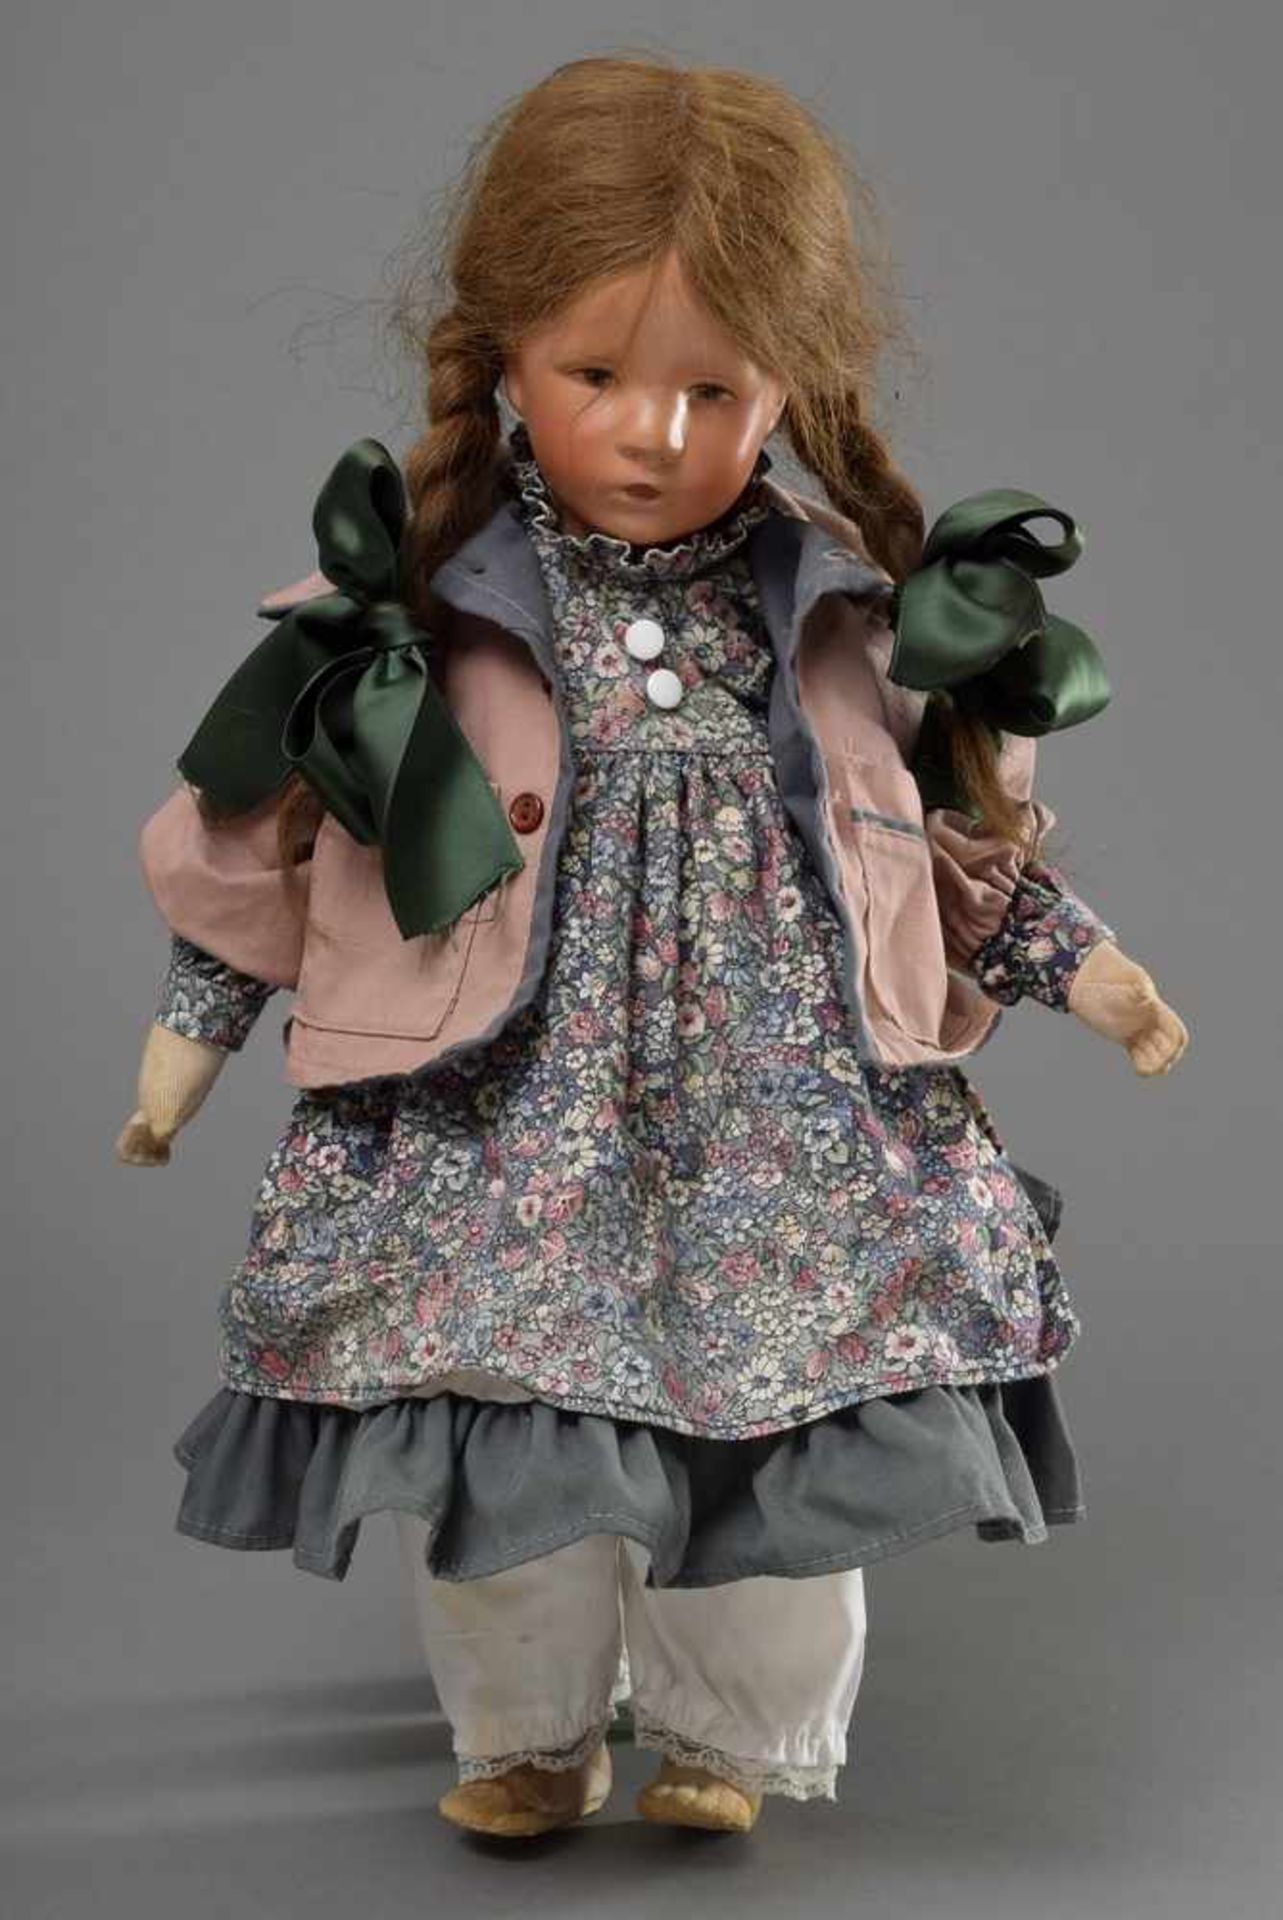 Käthe Kruse Puppe "Das deutsche Kind - Puppe VIII", 1928-1959 am linken Fuß bez., neu bekleidet, - Bild 2 aus 4